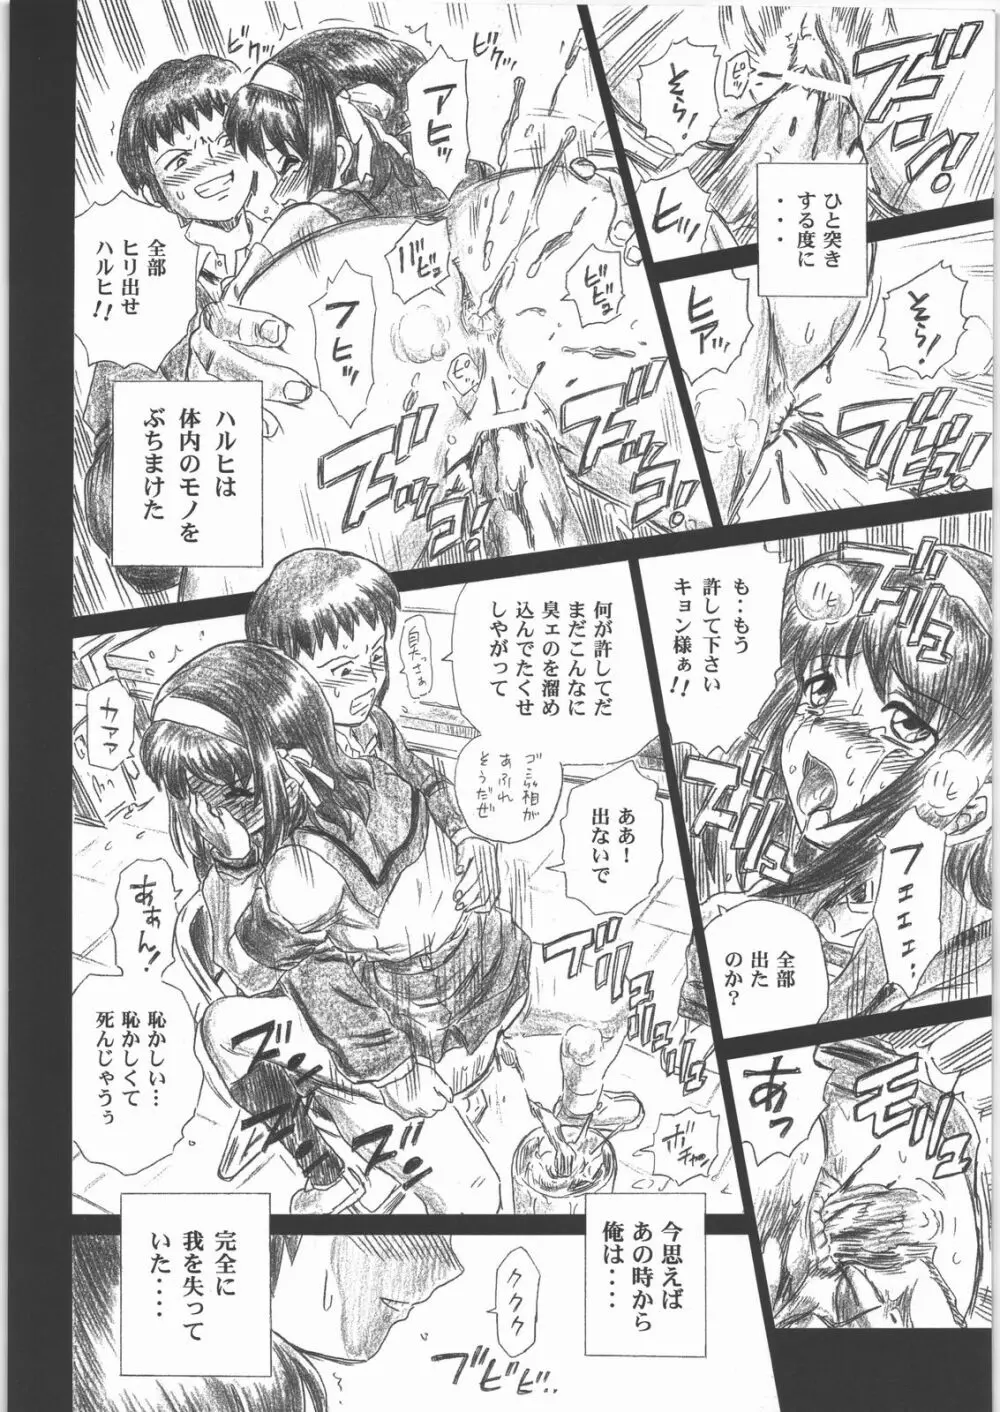 TAIL-MAN HARUHI SUZUMIYA BOOK 31ページ